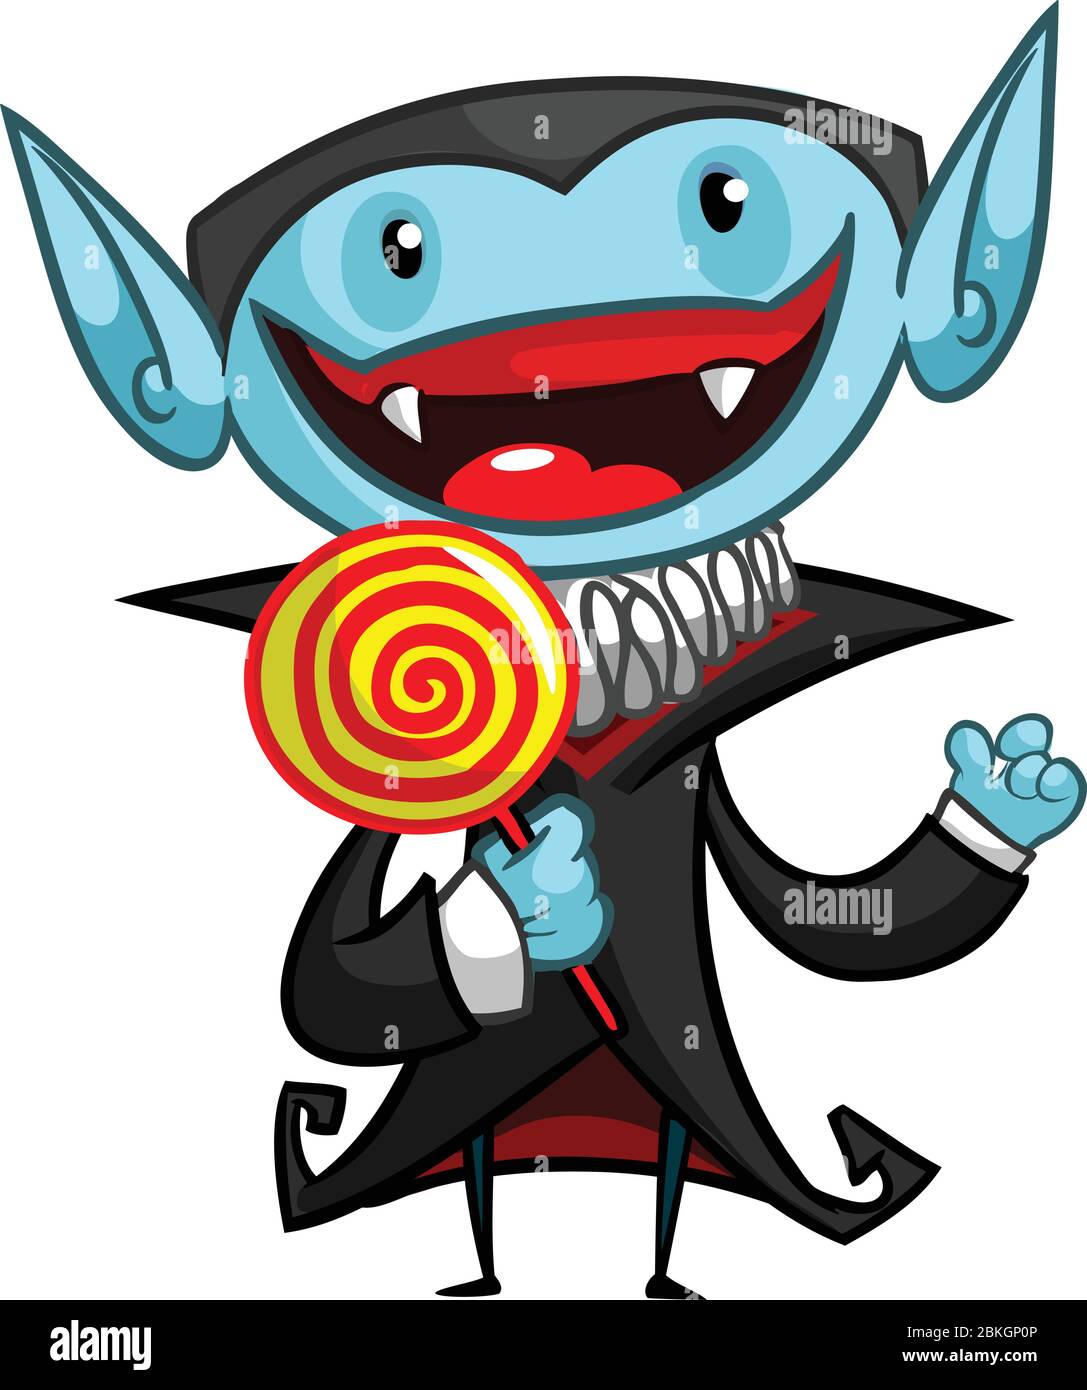 Vector illustration of cartoon vampire licking a lollipop Stock Vector